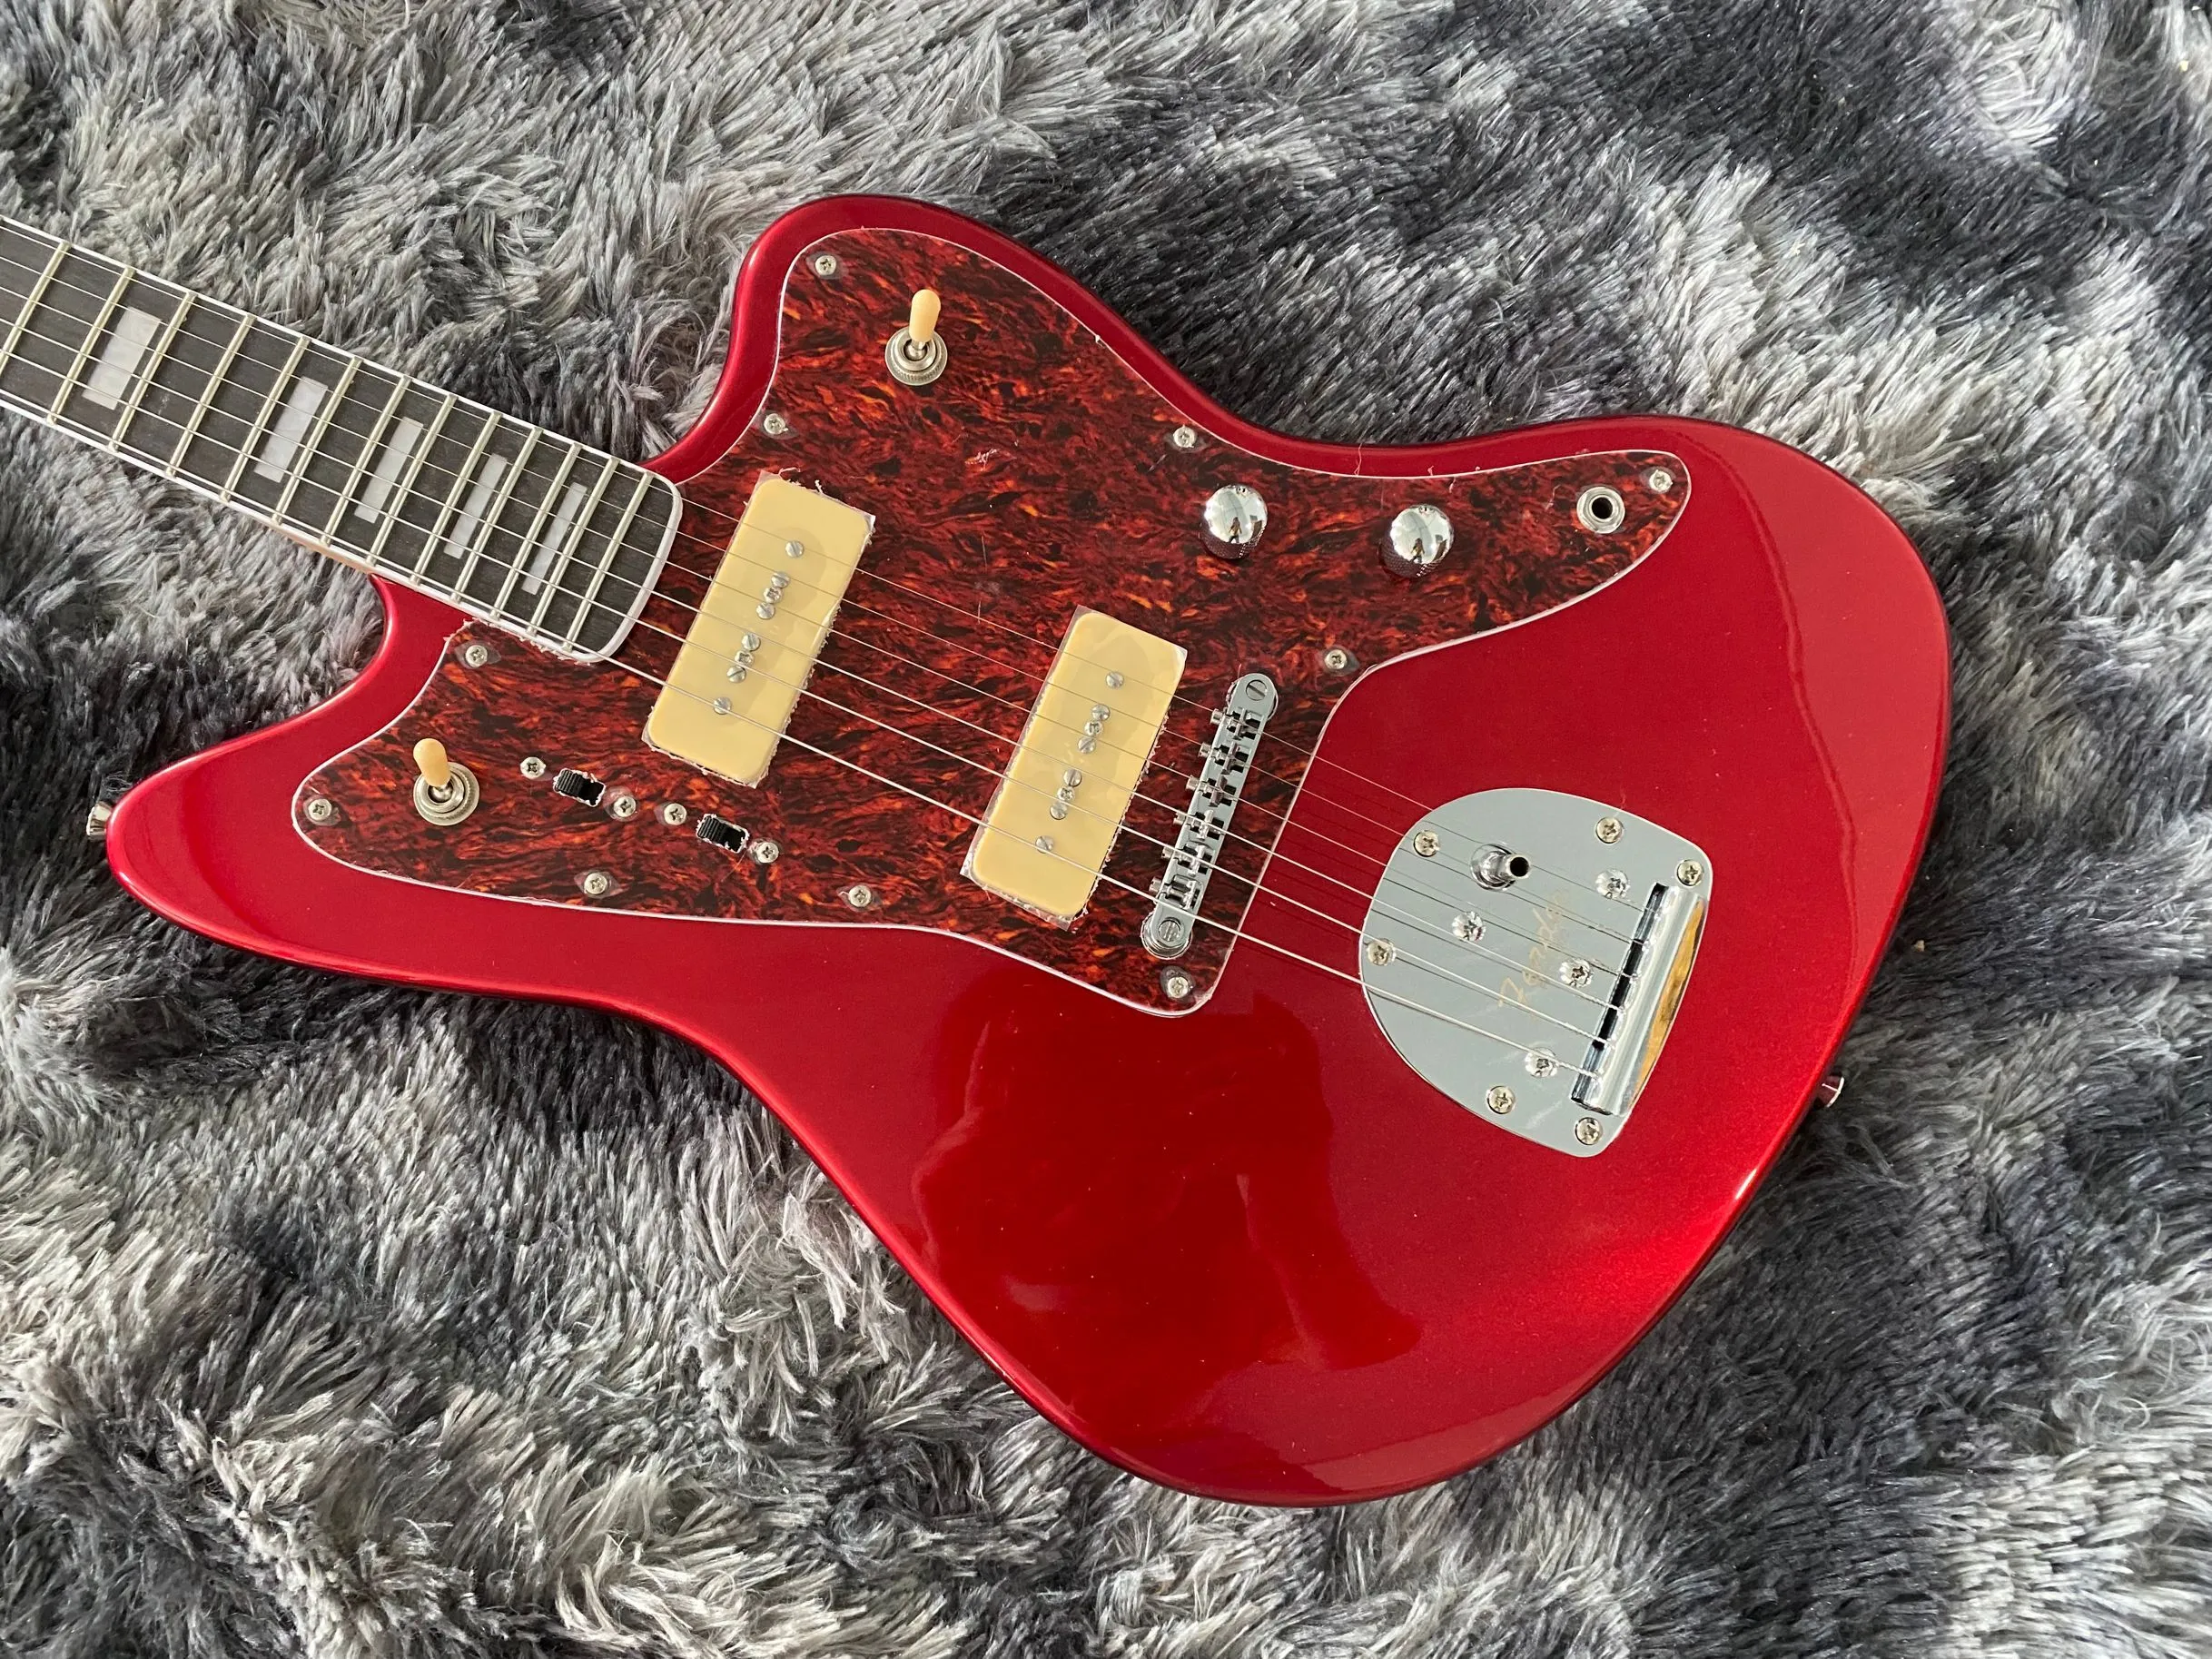 1959 Jazzmaster Journeyman Metallic Red Jaguar Электрогитара Белые звукосниматели P90 Корпус из ольхи Винтажные тюнеры Tremolo Bridge Хромированная фурнитура